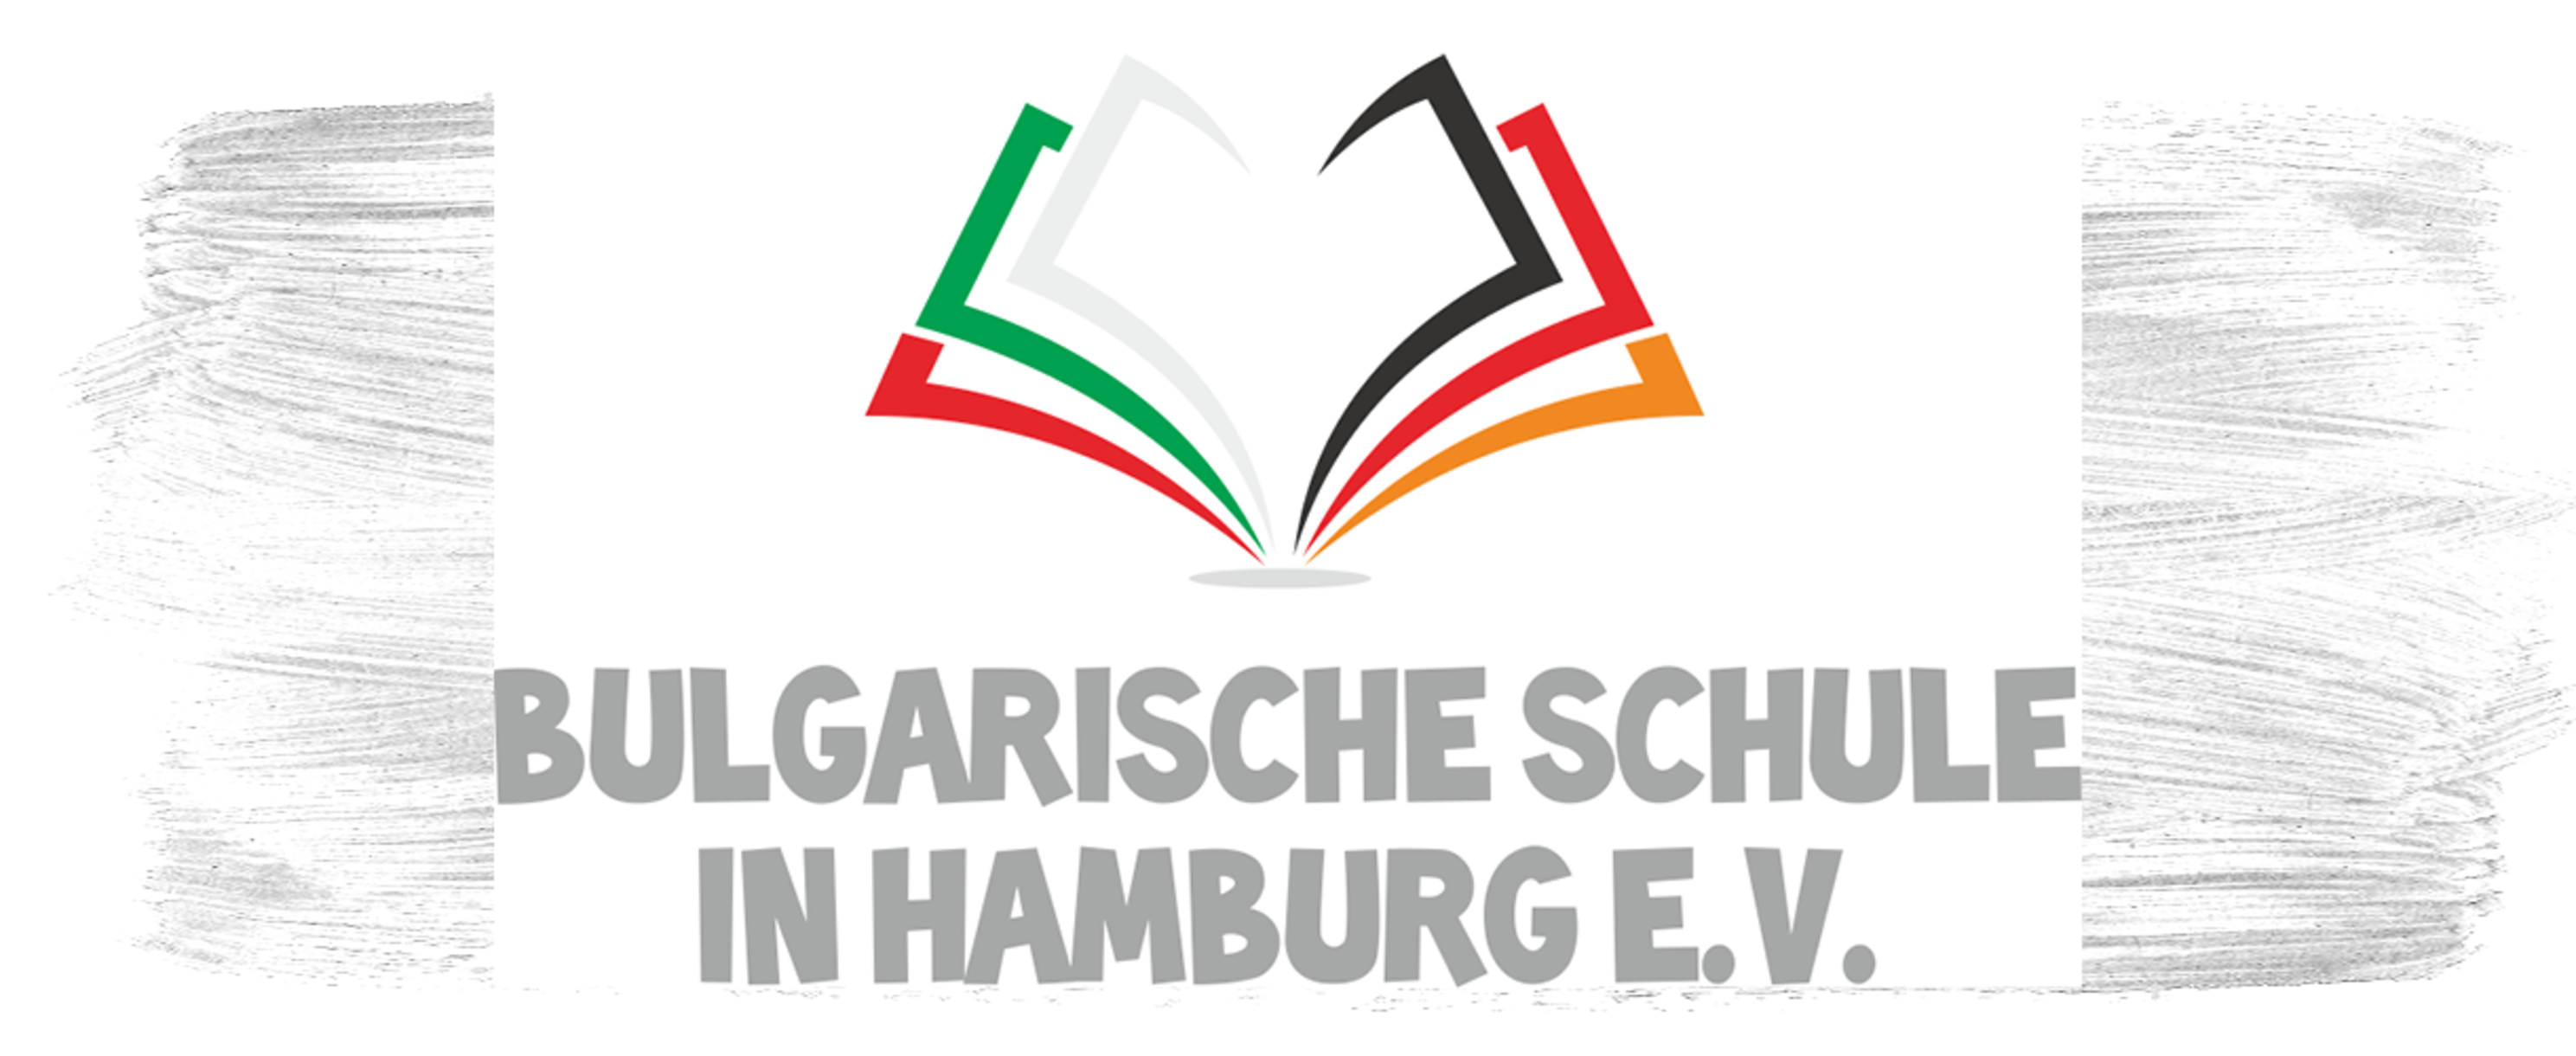 Die Bulgarische Schule in Hamburg e.V.